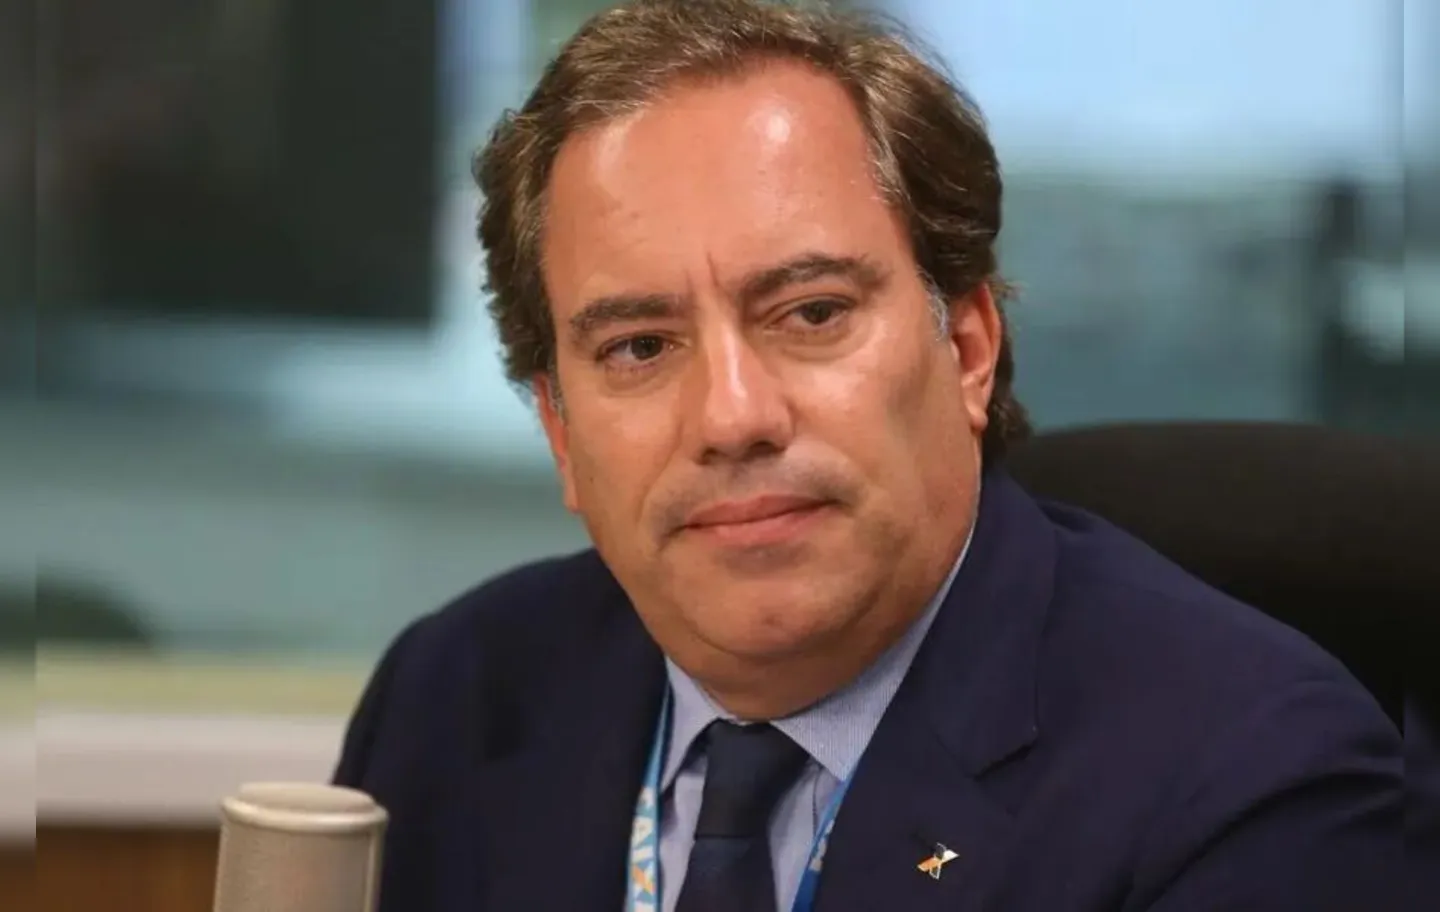 Pedro Guimarães deixou a presidência da Caixa após ser acusado de assédio sexual por funcionárias do banco